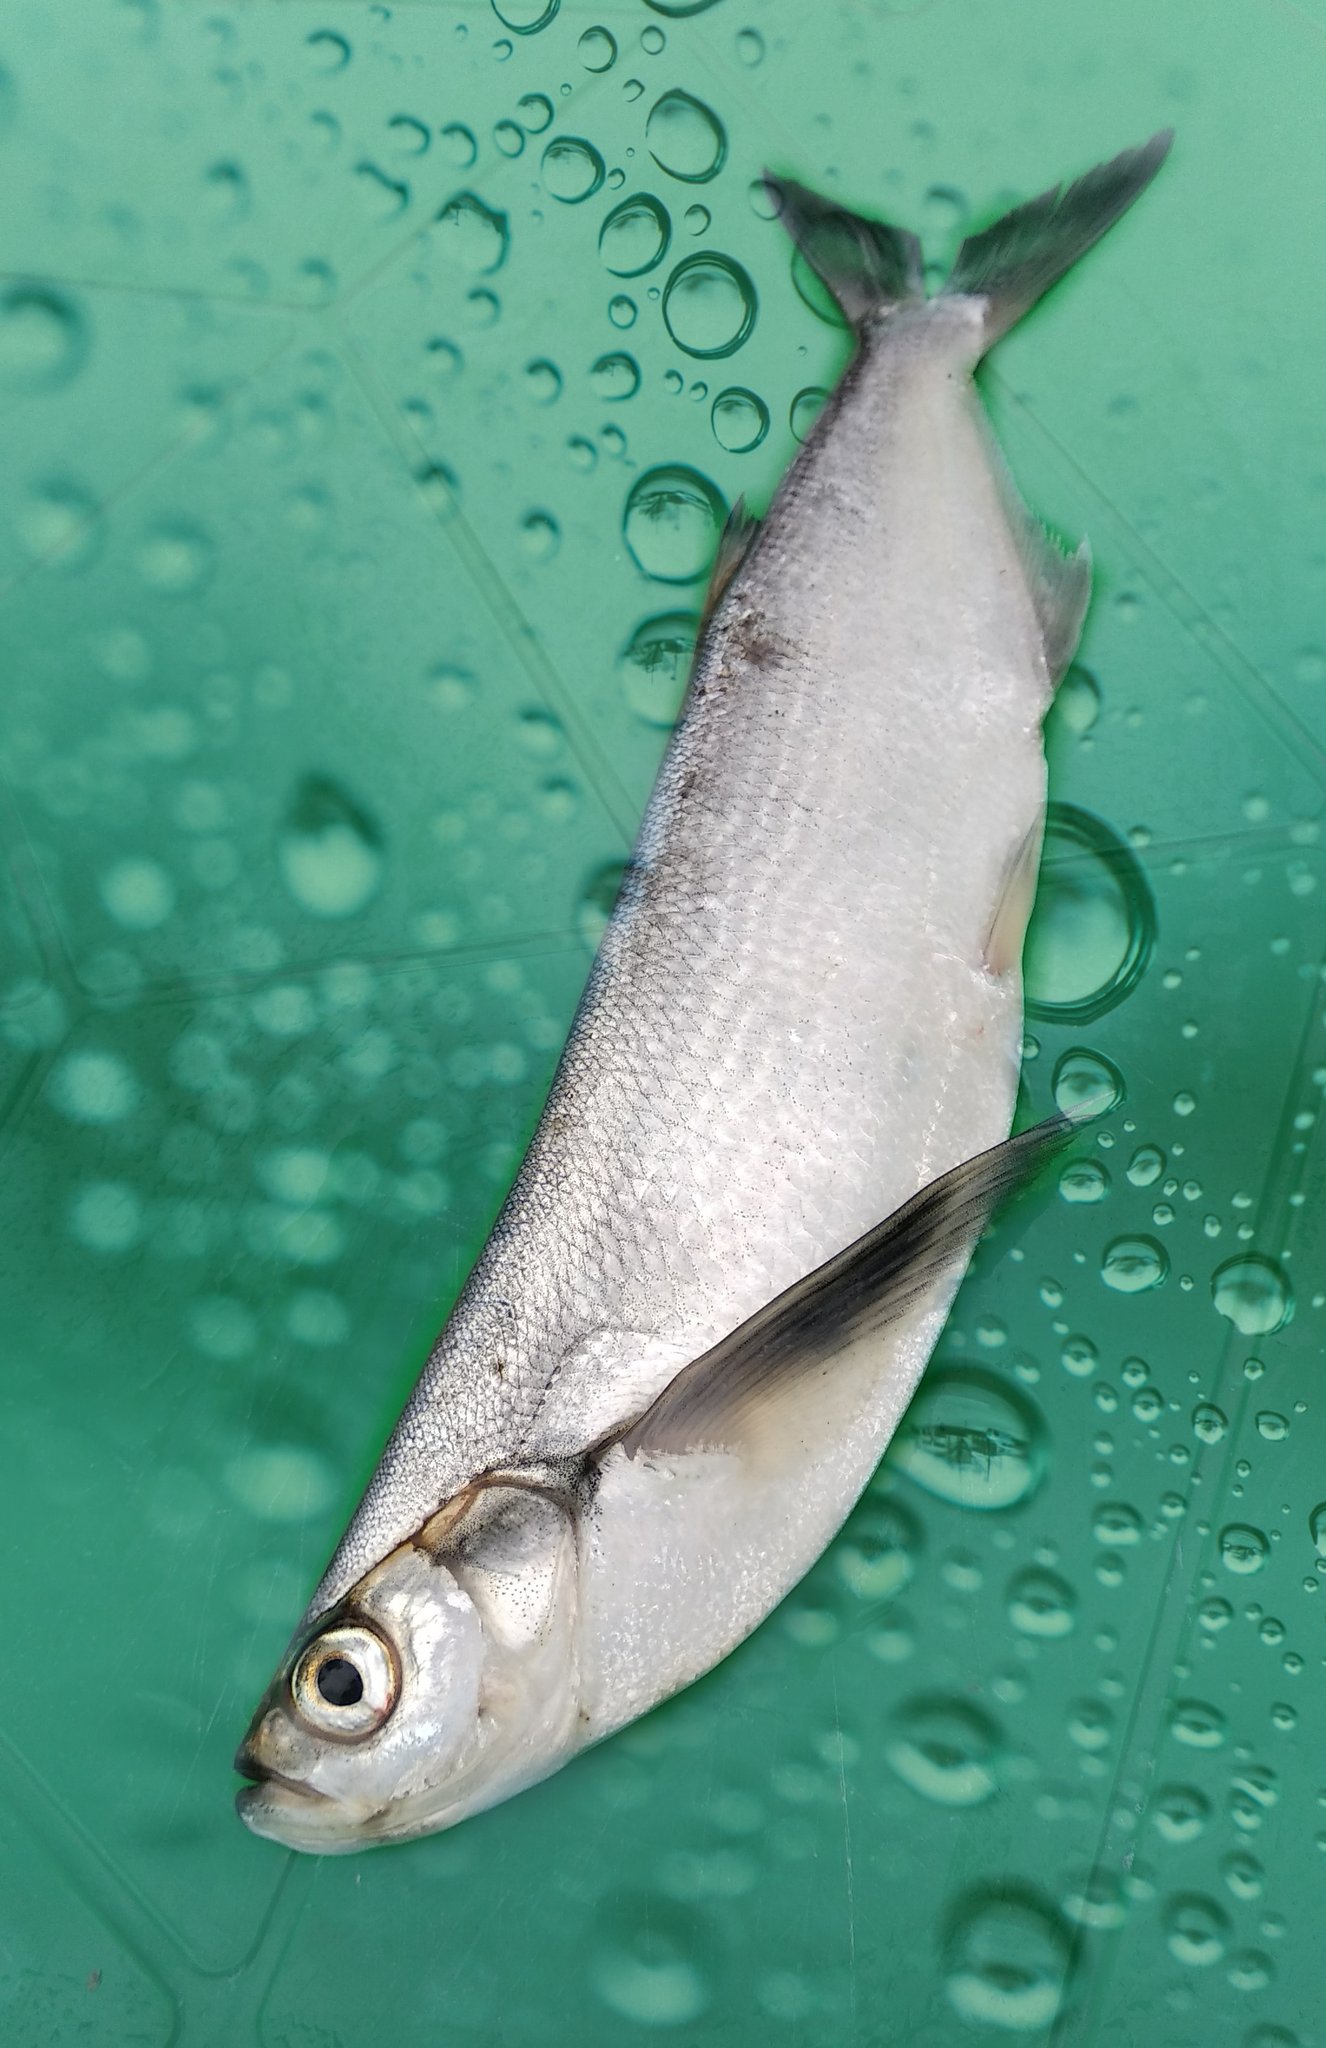 Чехонь: рыба чехонь фото и описание, нерест, способы ловли, образ жизни, приманки